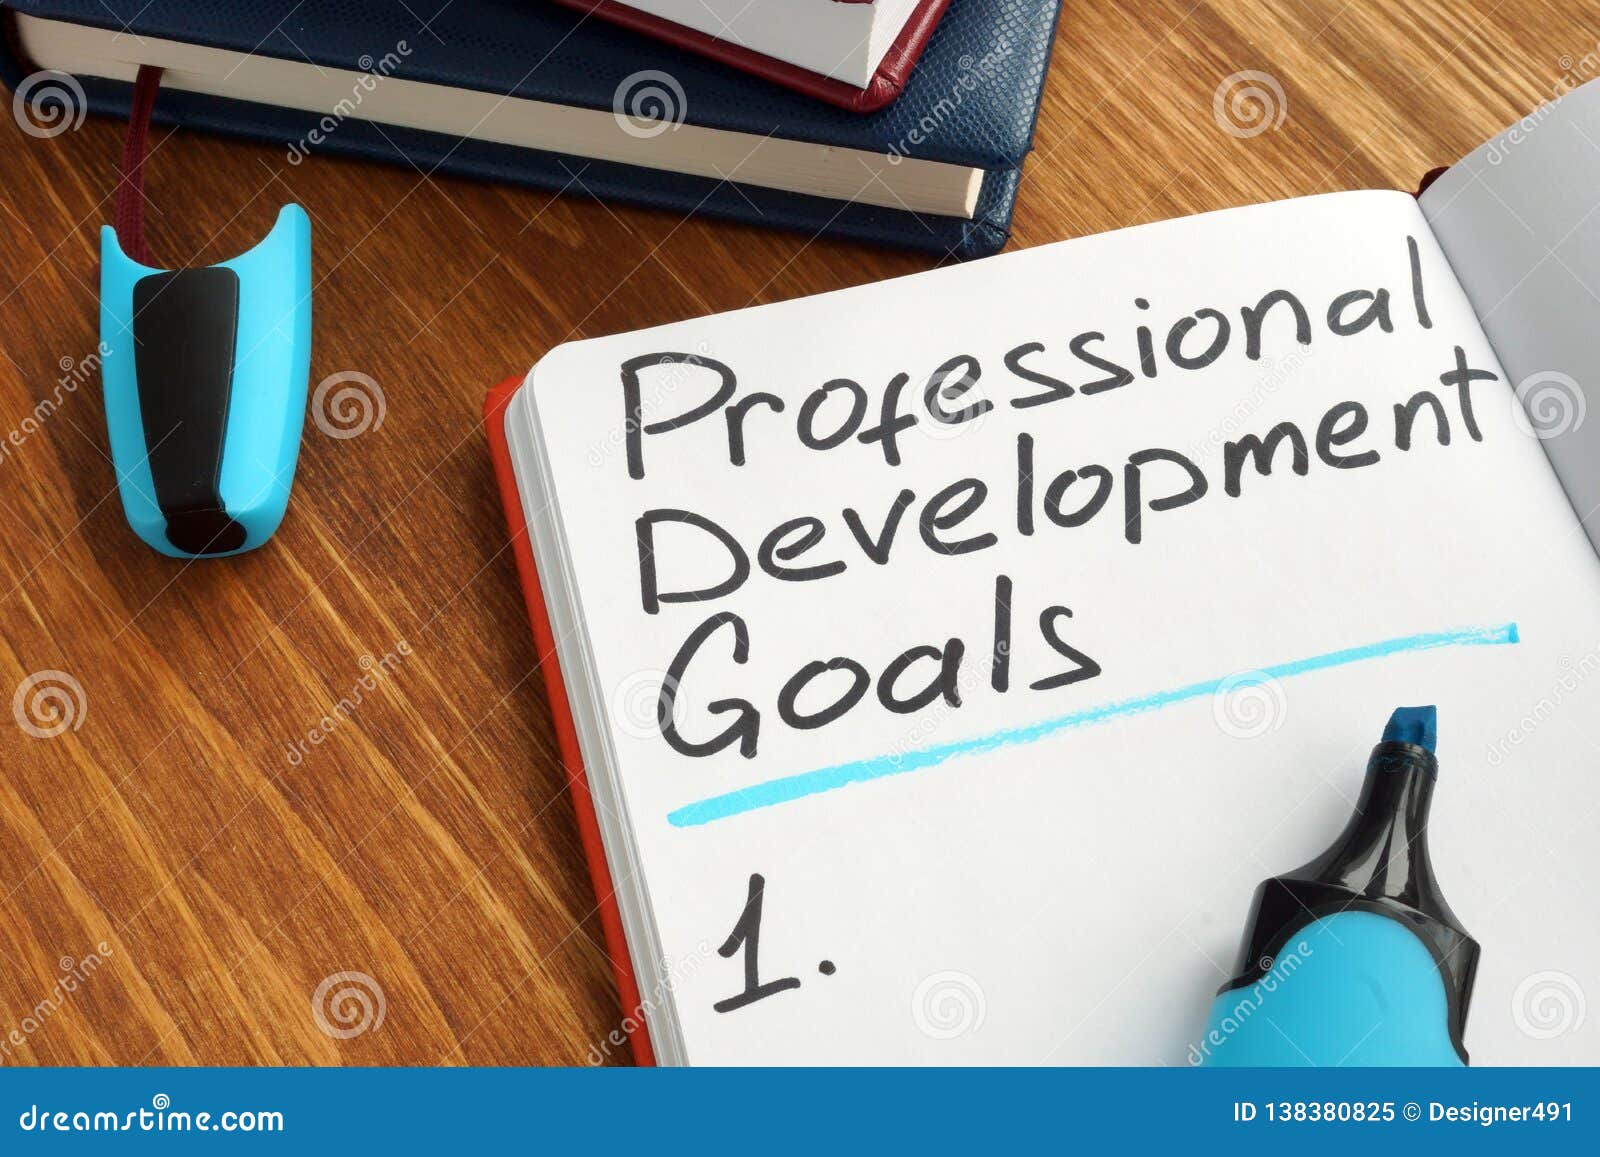 professional development goals list